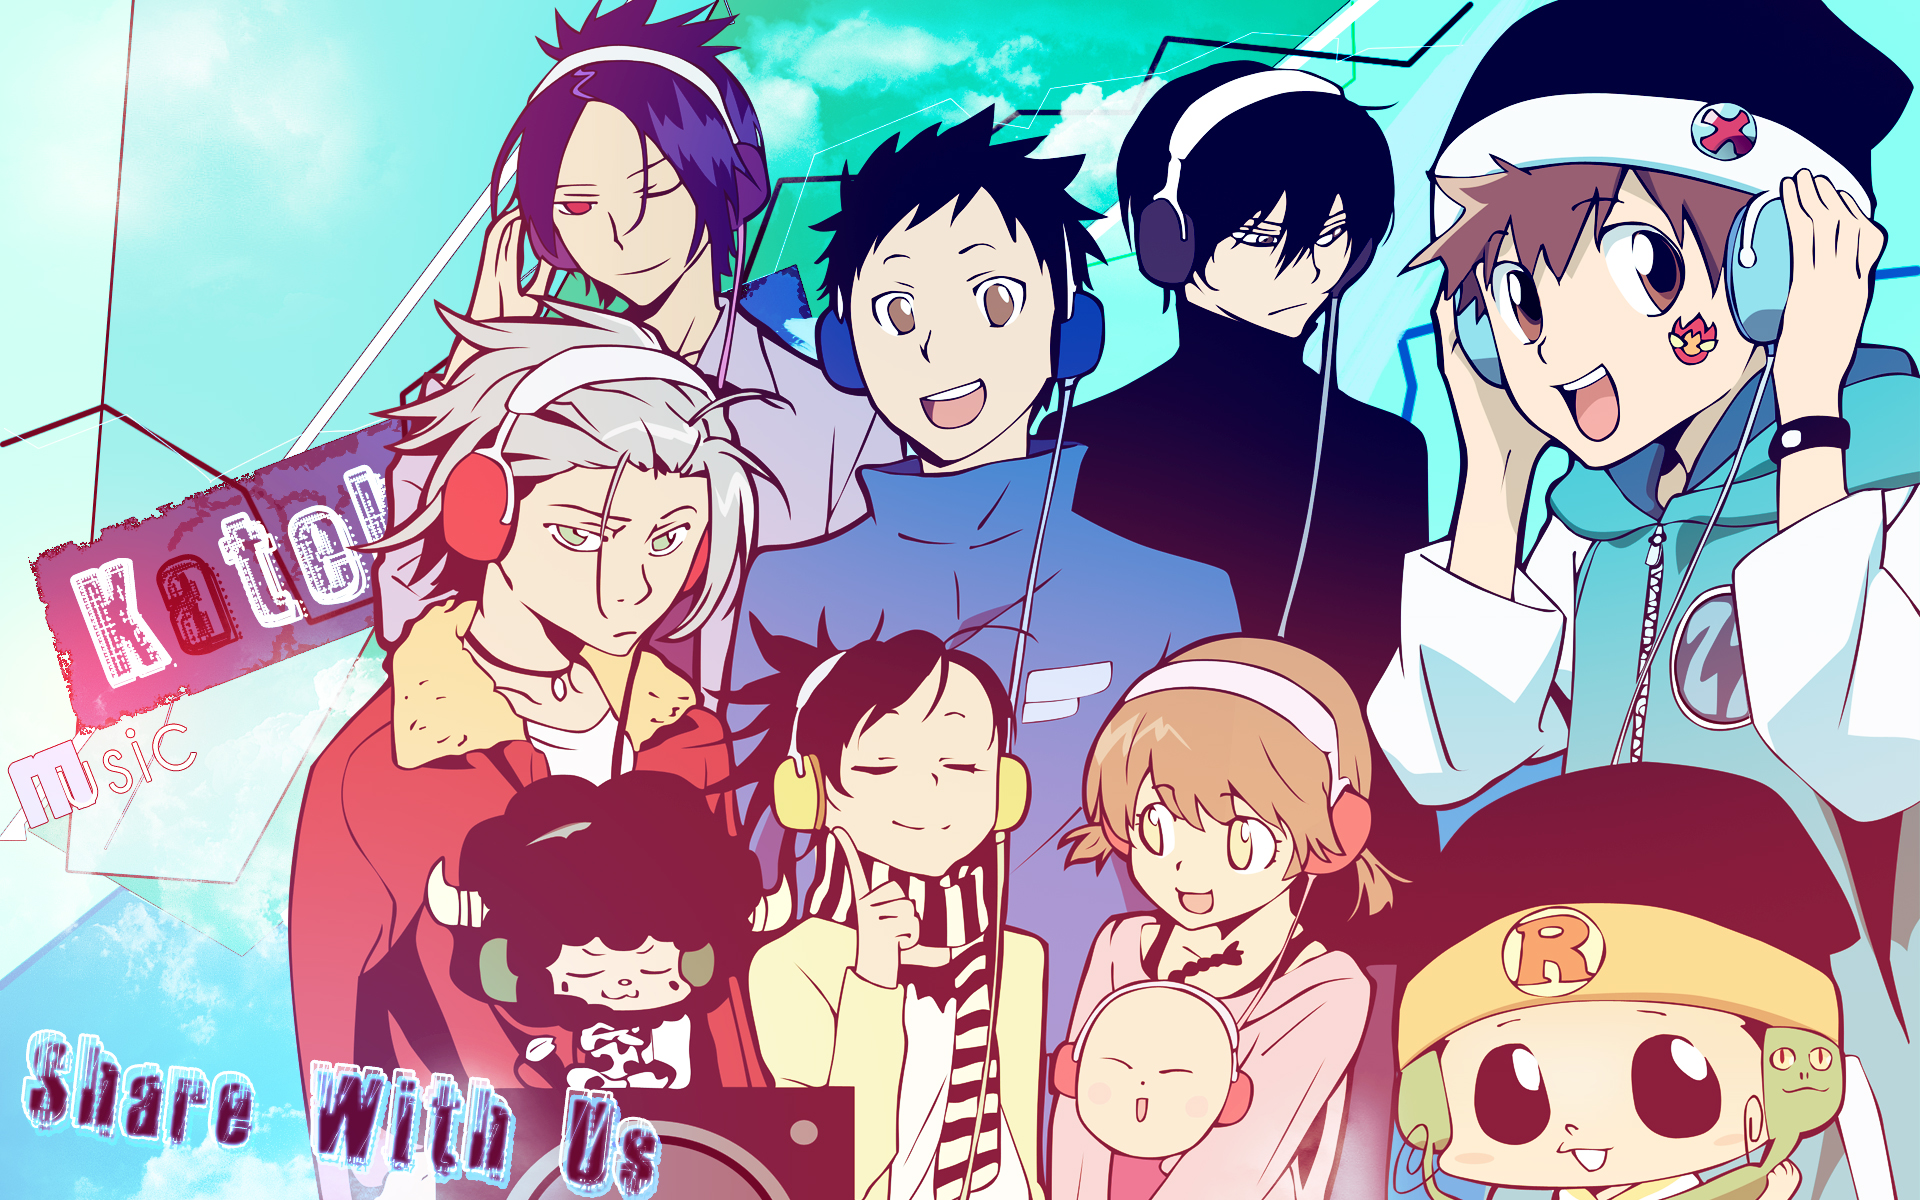 Free download wallpaper Anime, Katekyō Hitman Reborn! on your PC desktop